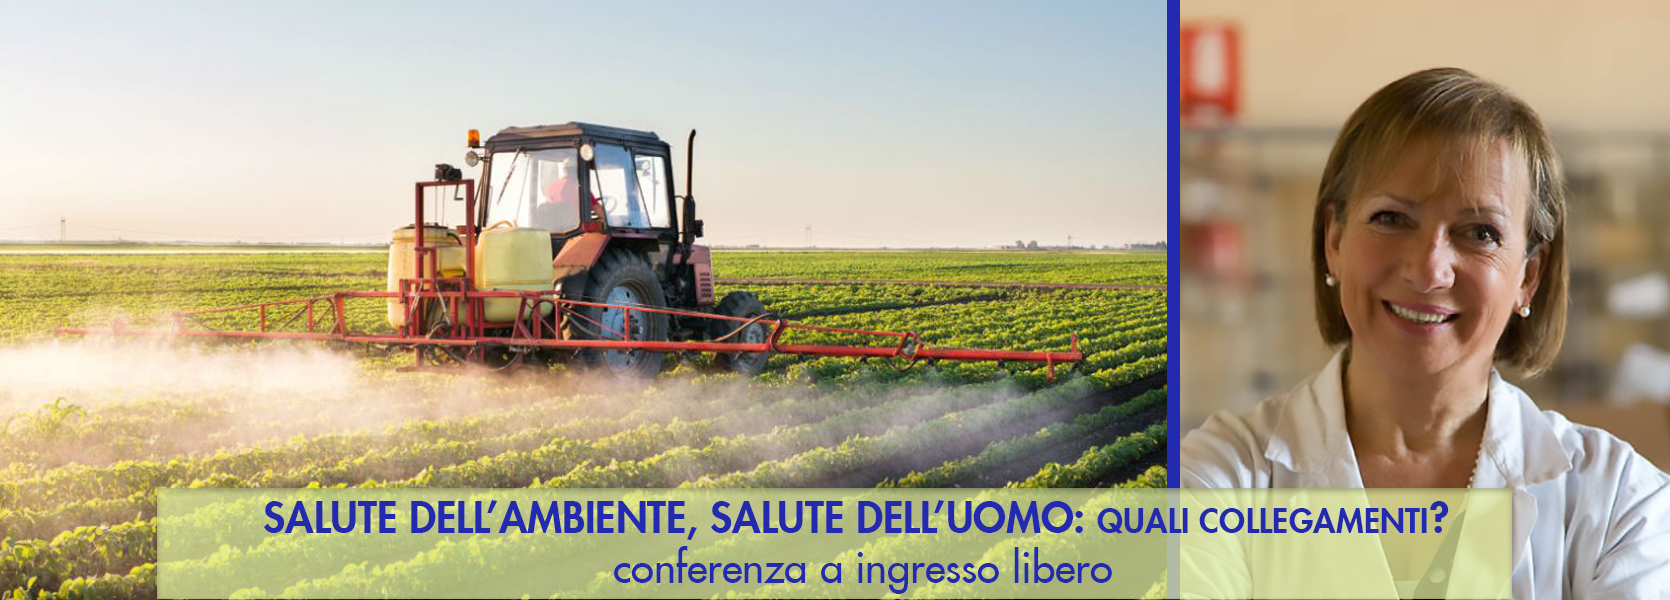 Salute dell'Ambiente, Salute dell'Uomo -  conferenza con il Patrocinio del Comune di Rimini